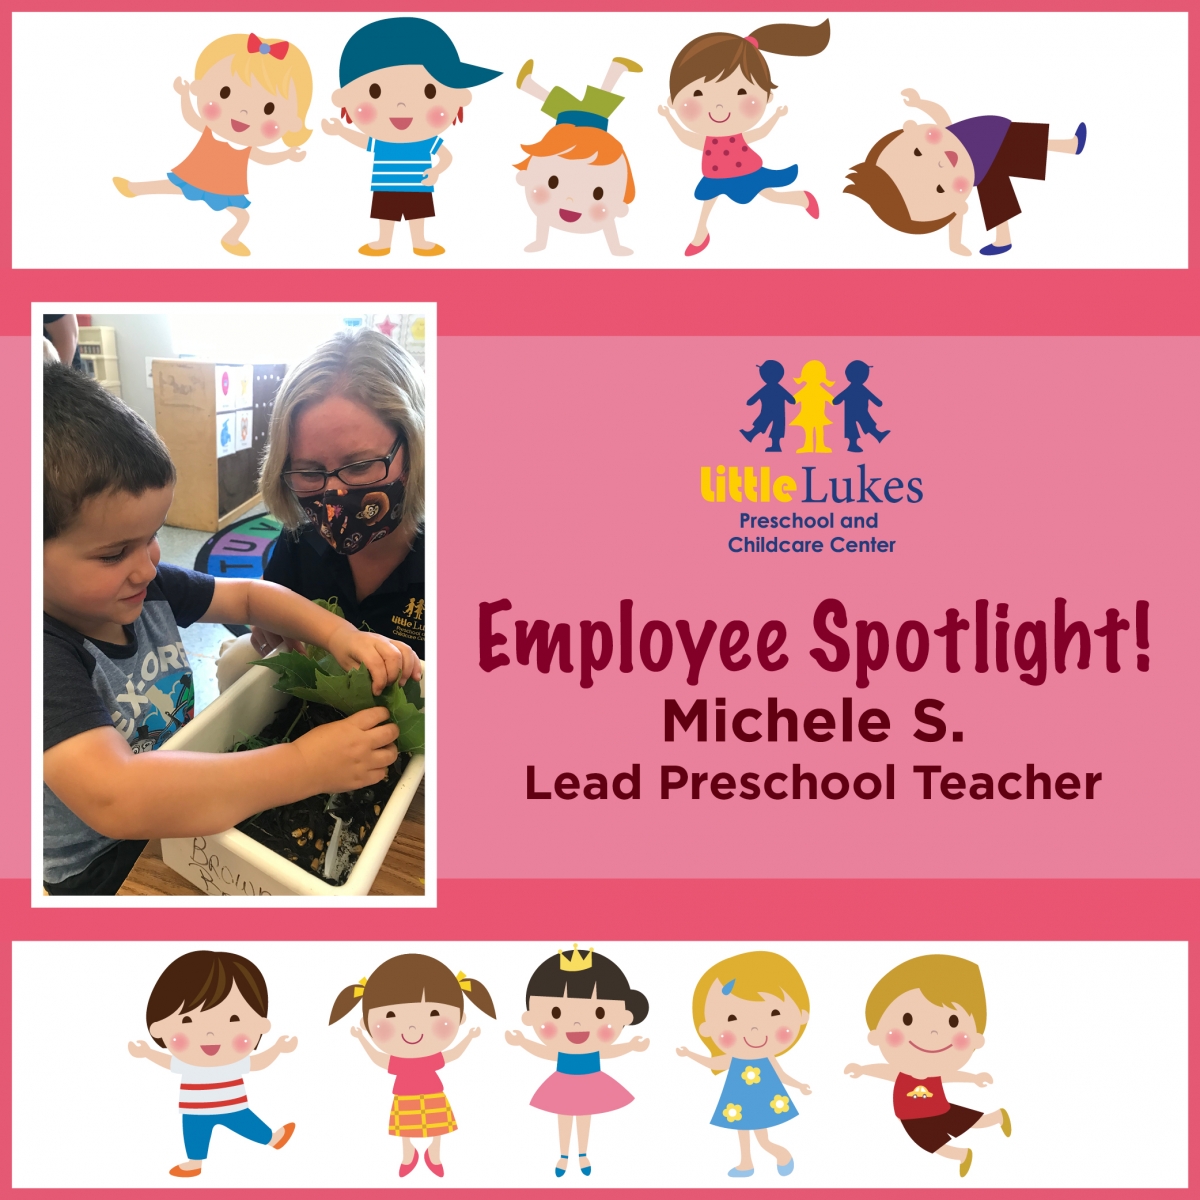 Little Lukes is Proud to Spotlight Lead Preschool Teacher Michele S!